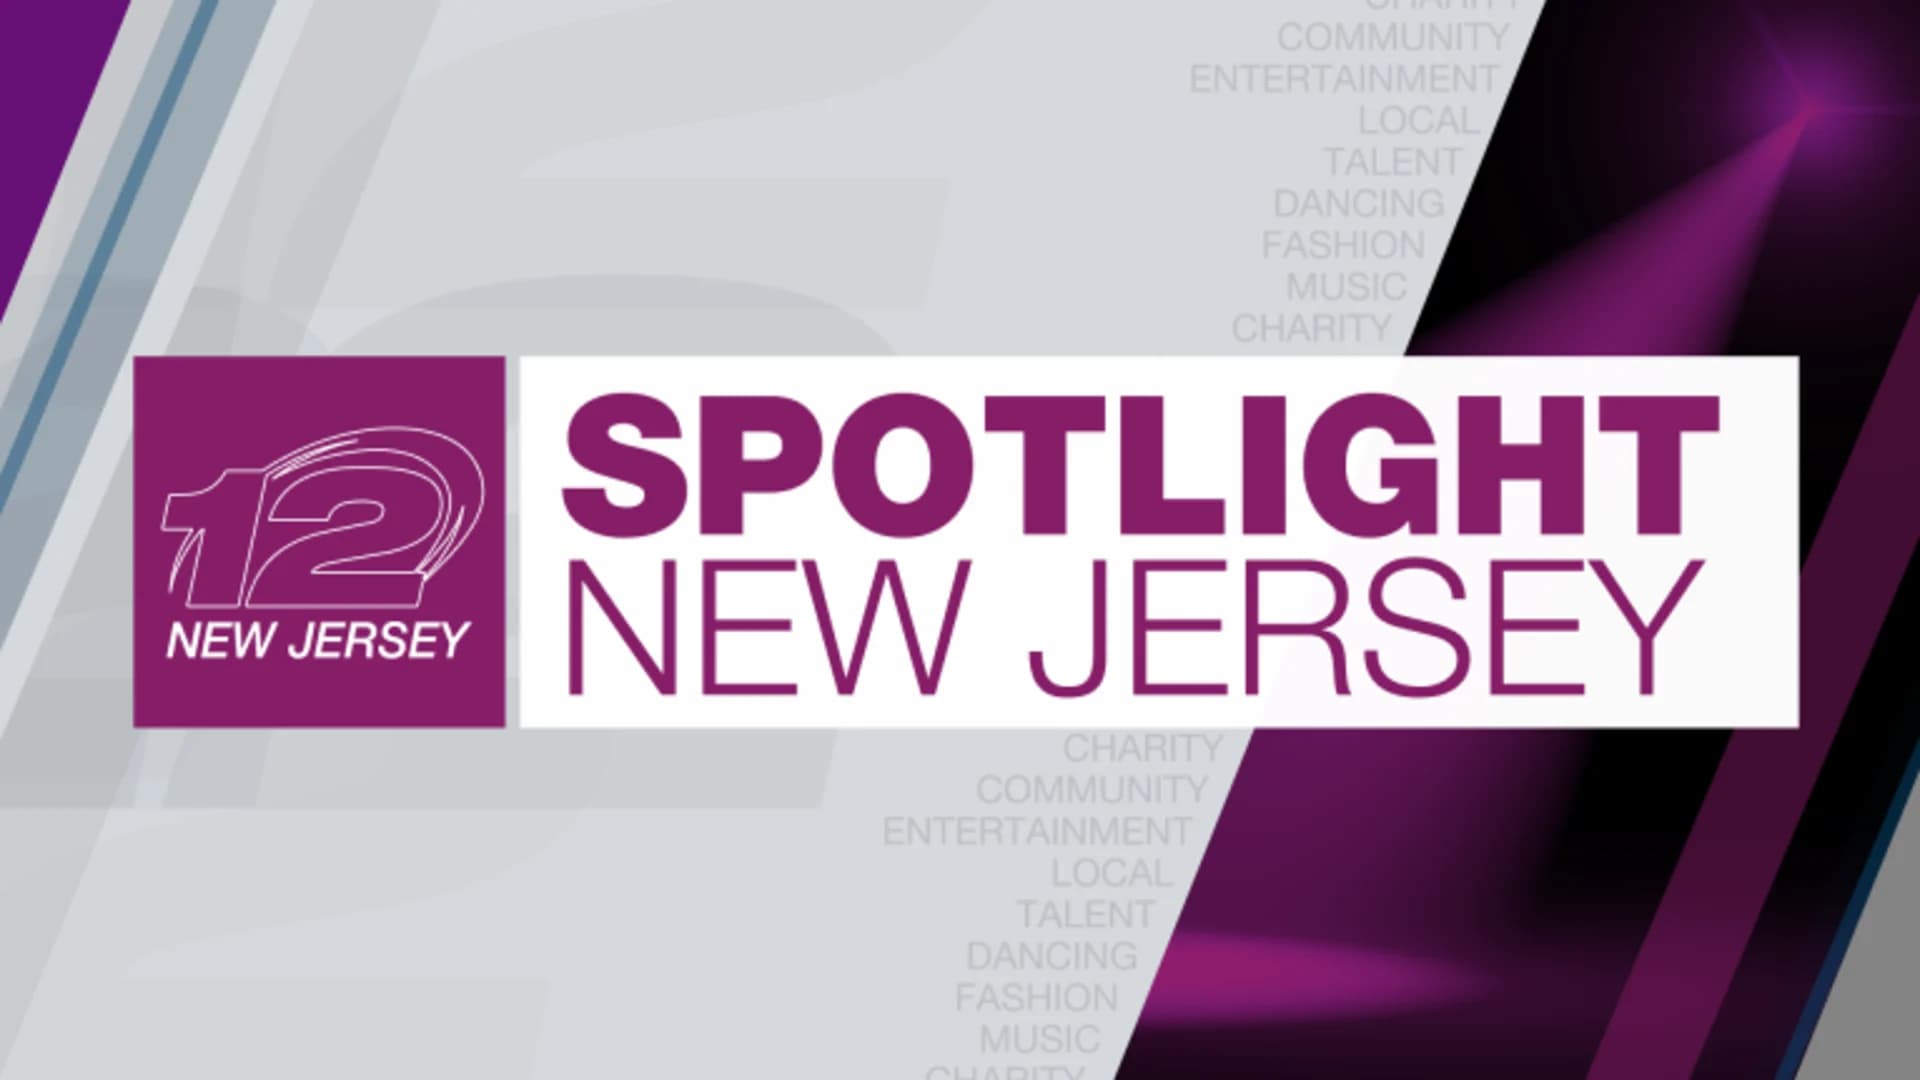 2018 Spotlight New Jersey - Information